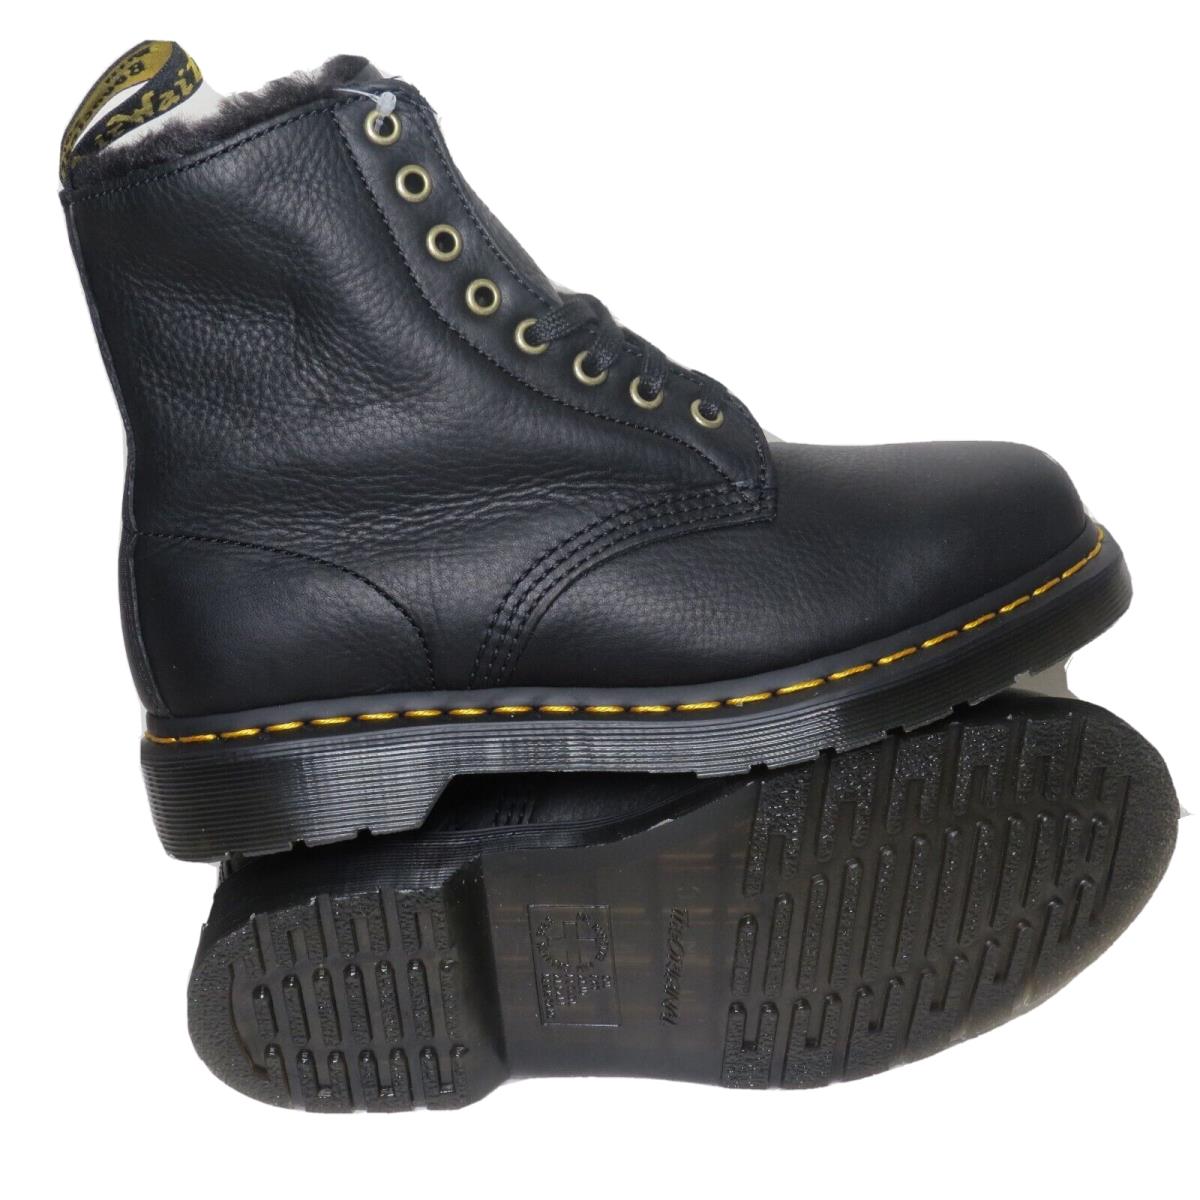 Dr Martens 1460 Pascal FL Fur Black Leather Boots Size Men 7 - Women 8